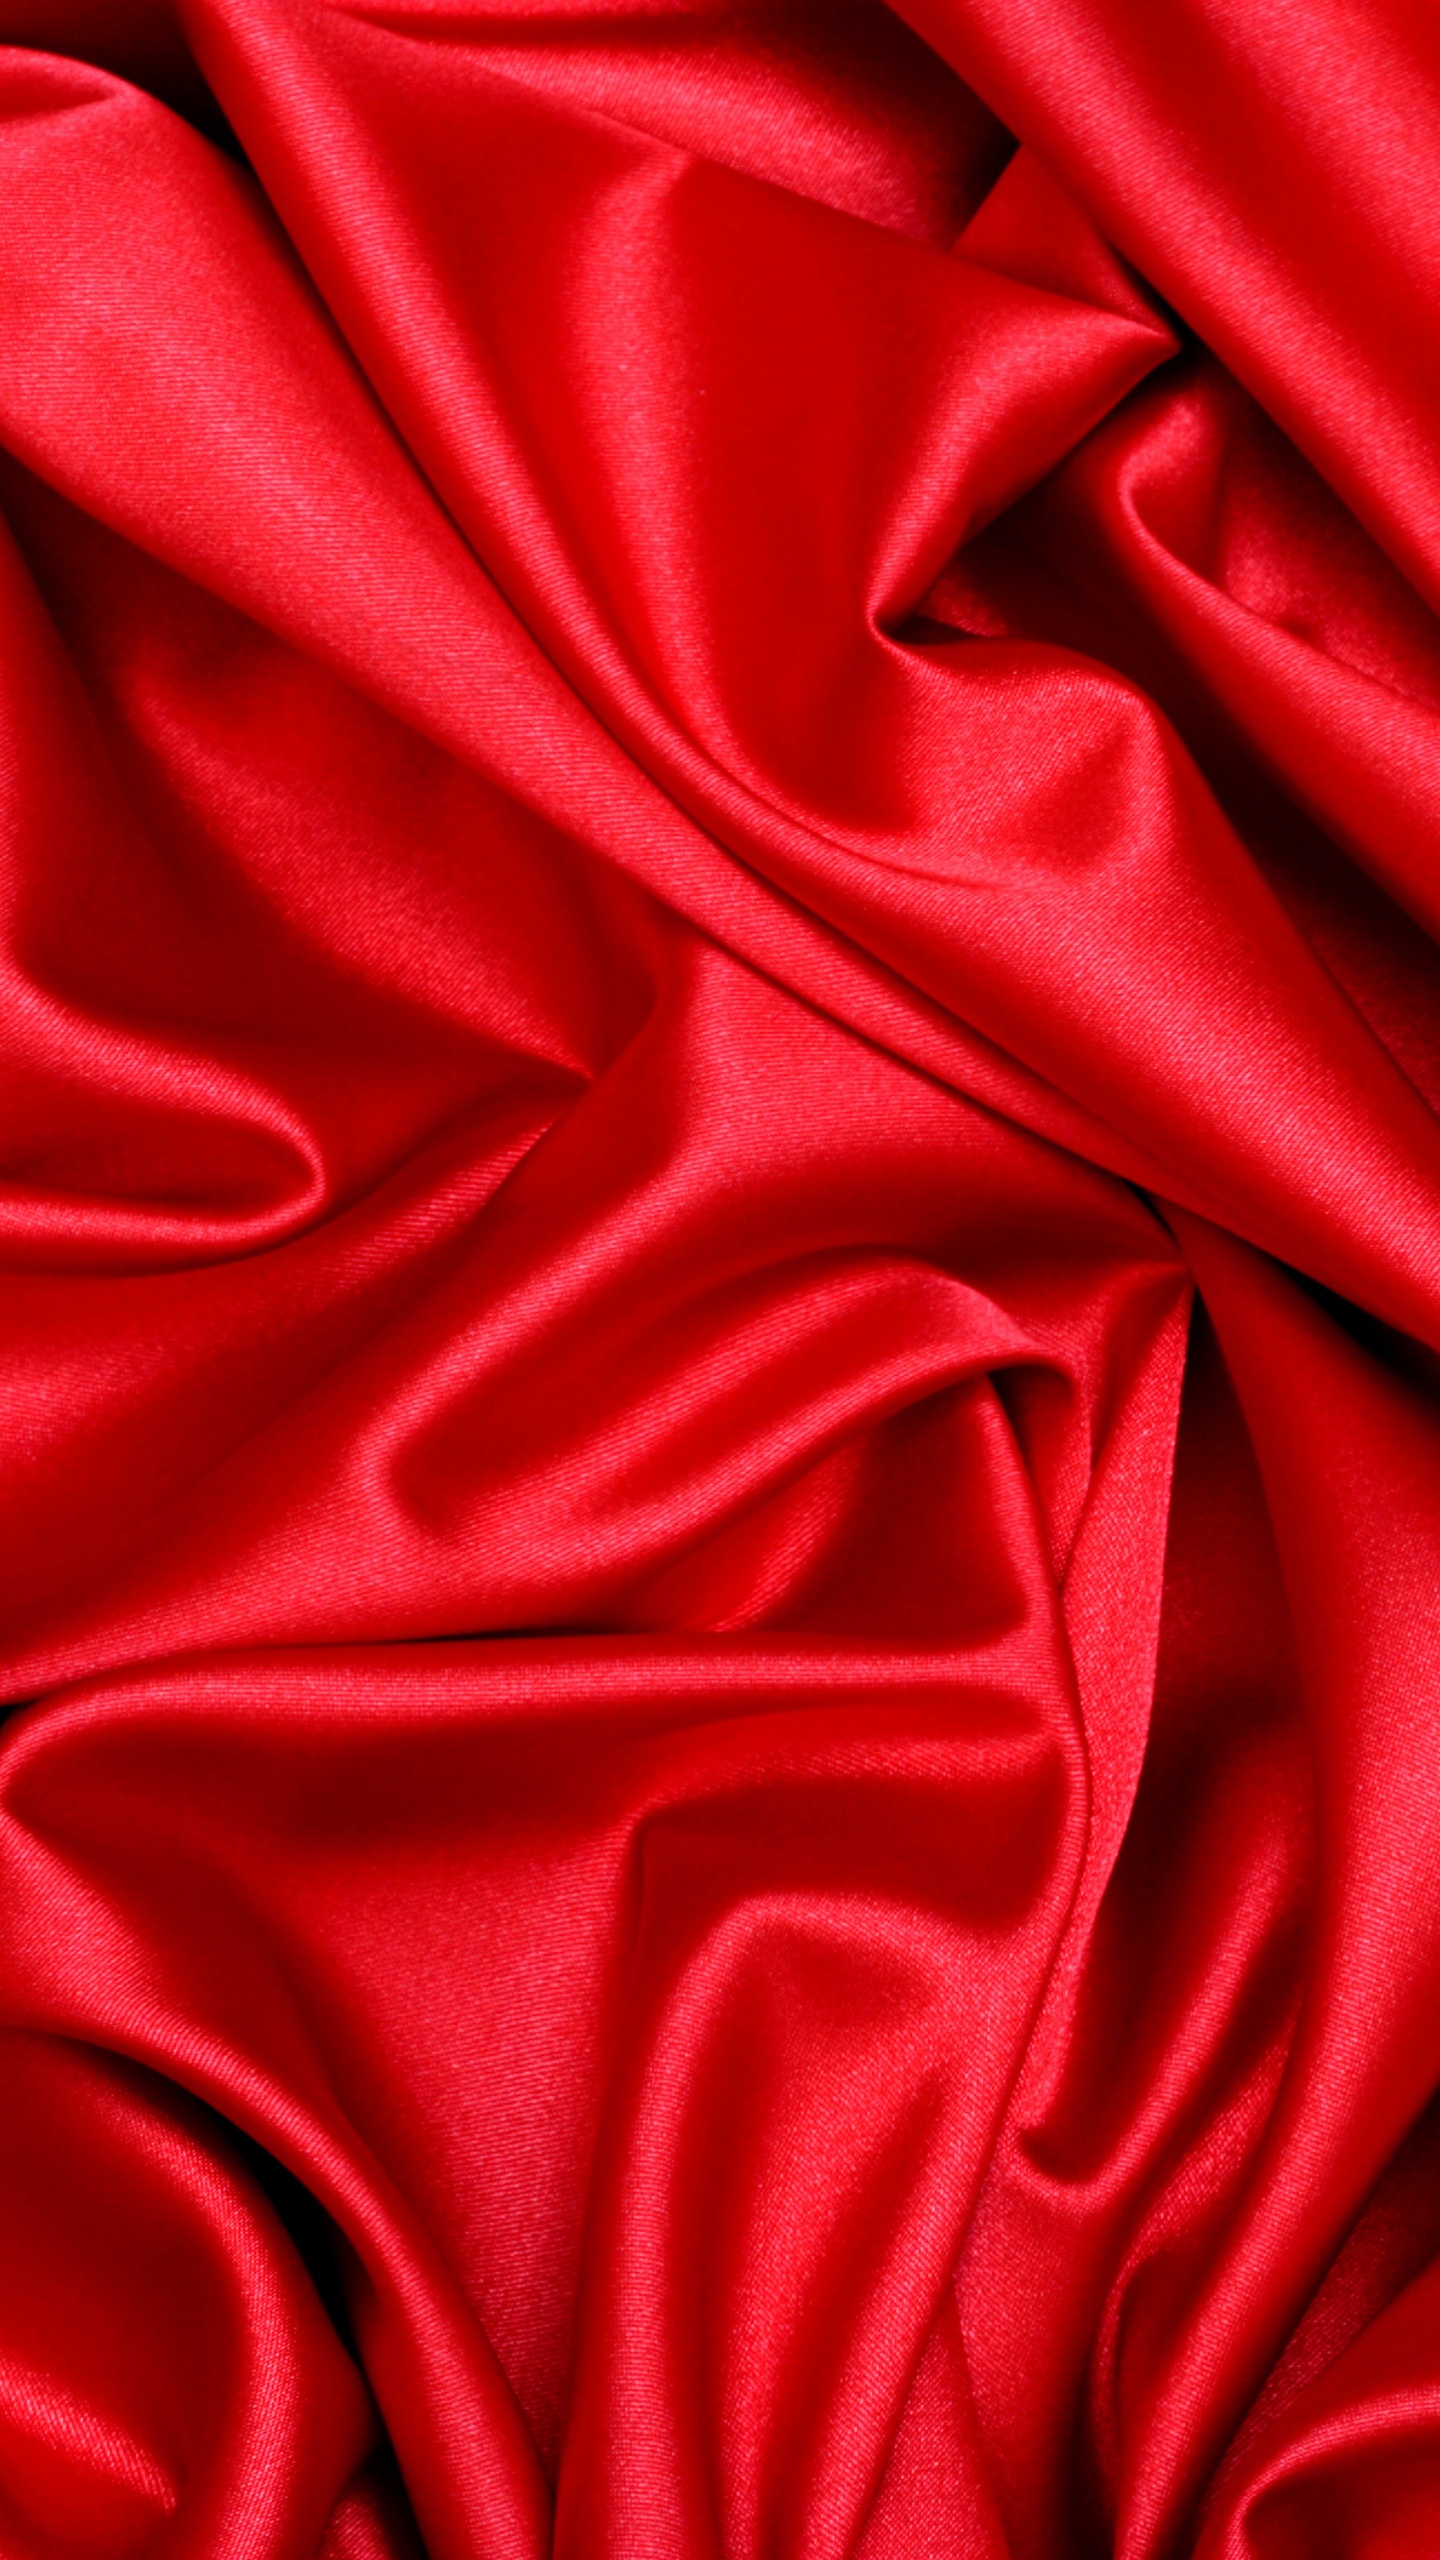 缎面, 丝绸, 红色的, 天鹅绒, 品红色 壁纸 1440x2560 允许